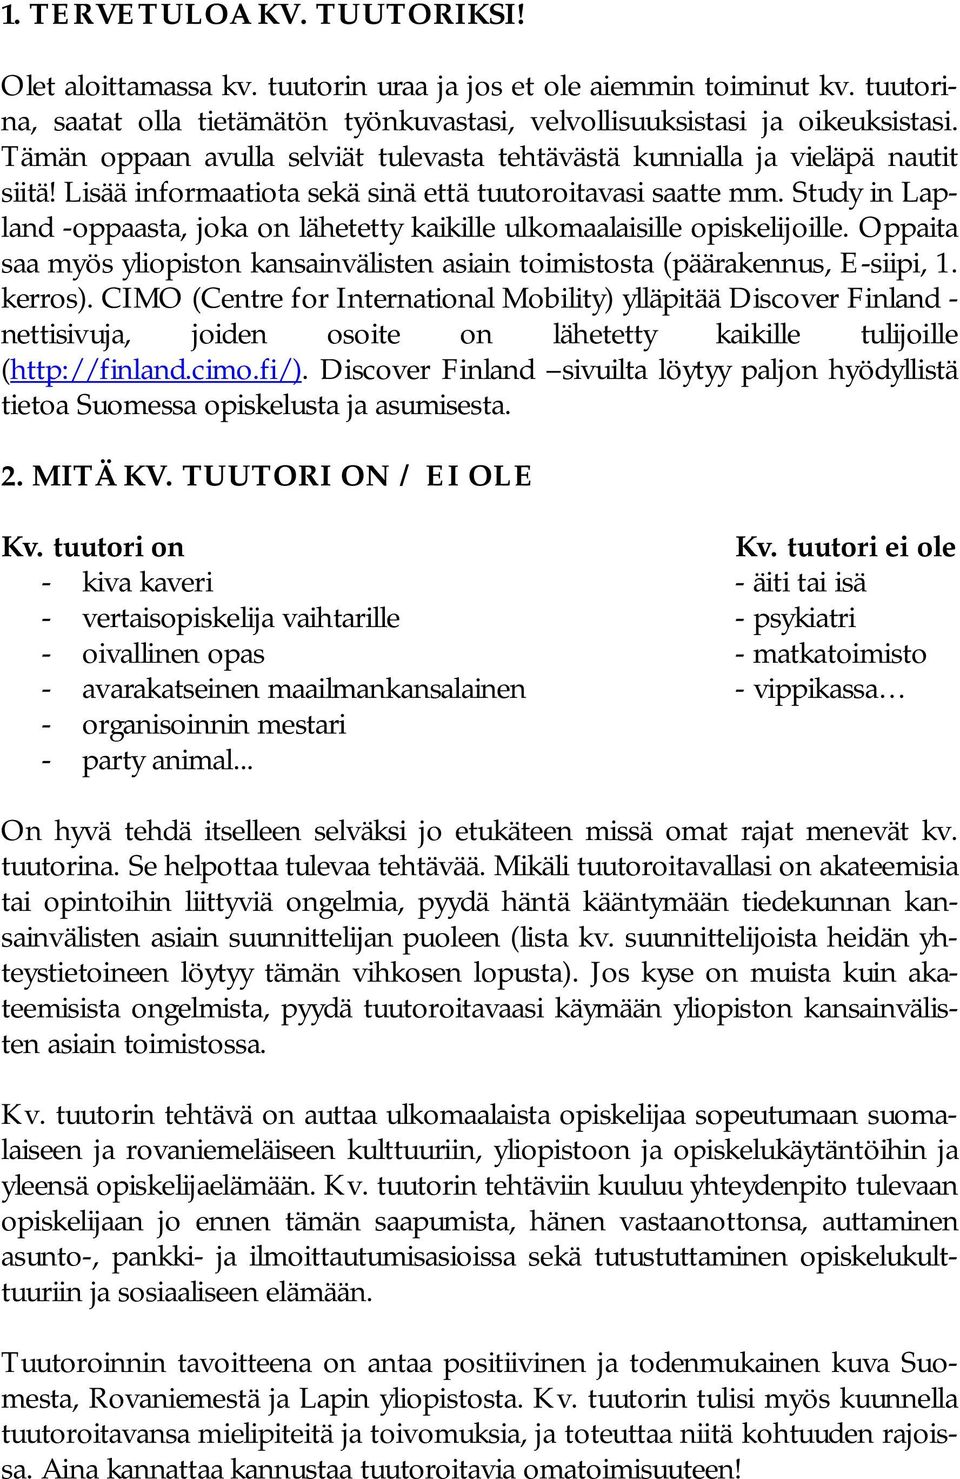 Study in Lapland oppaasta, joka on lähetetty kaikille ulkomaalaisille opiskelijoille. Oppaita saa myös yliopiston kansainvälisten asiain toimistosta (päärakennus, E siipi, 1. kerros).